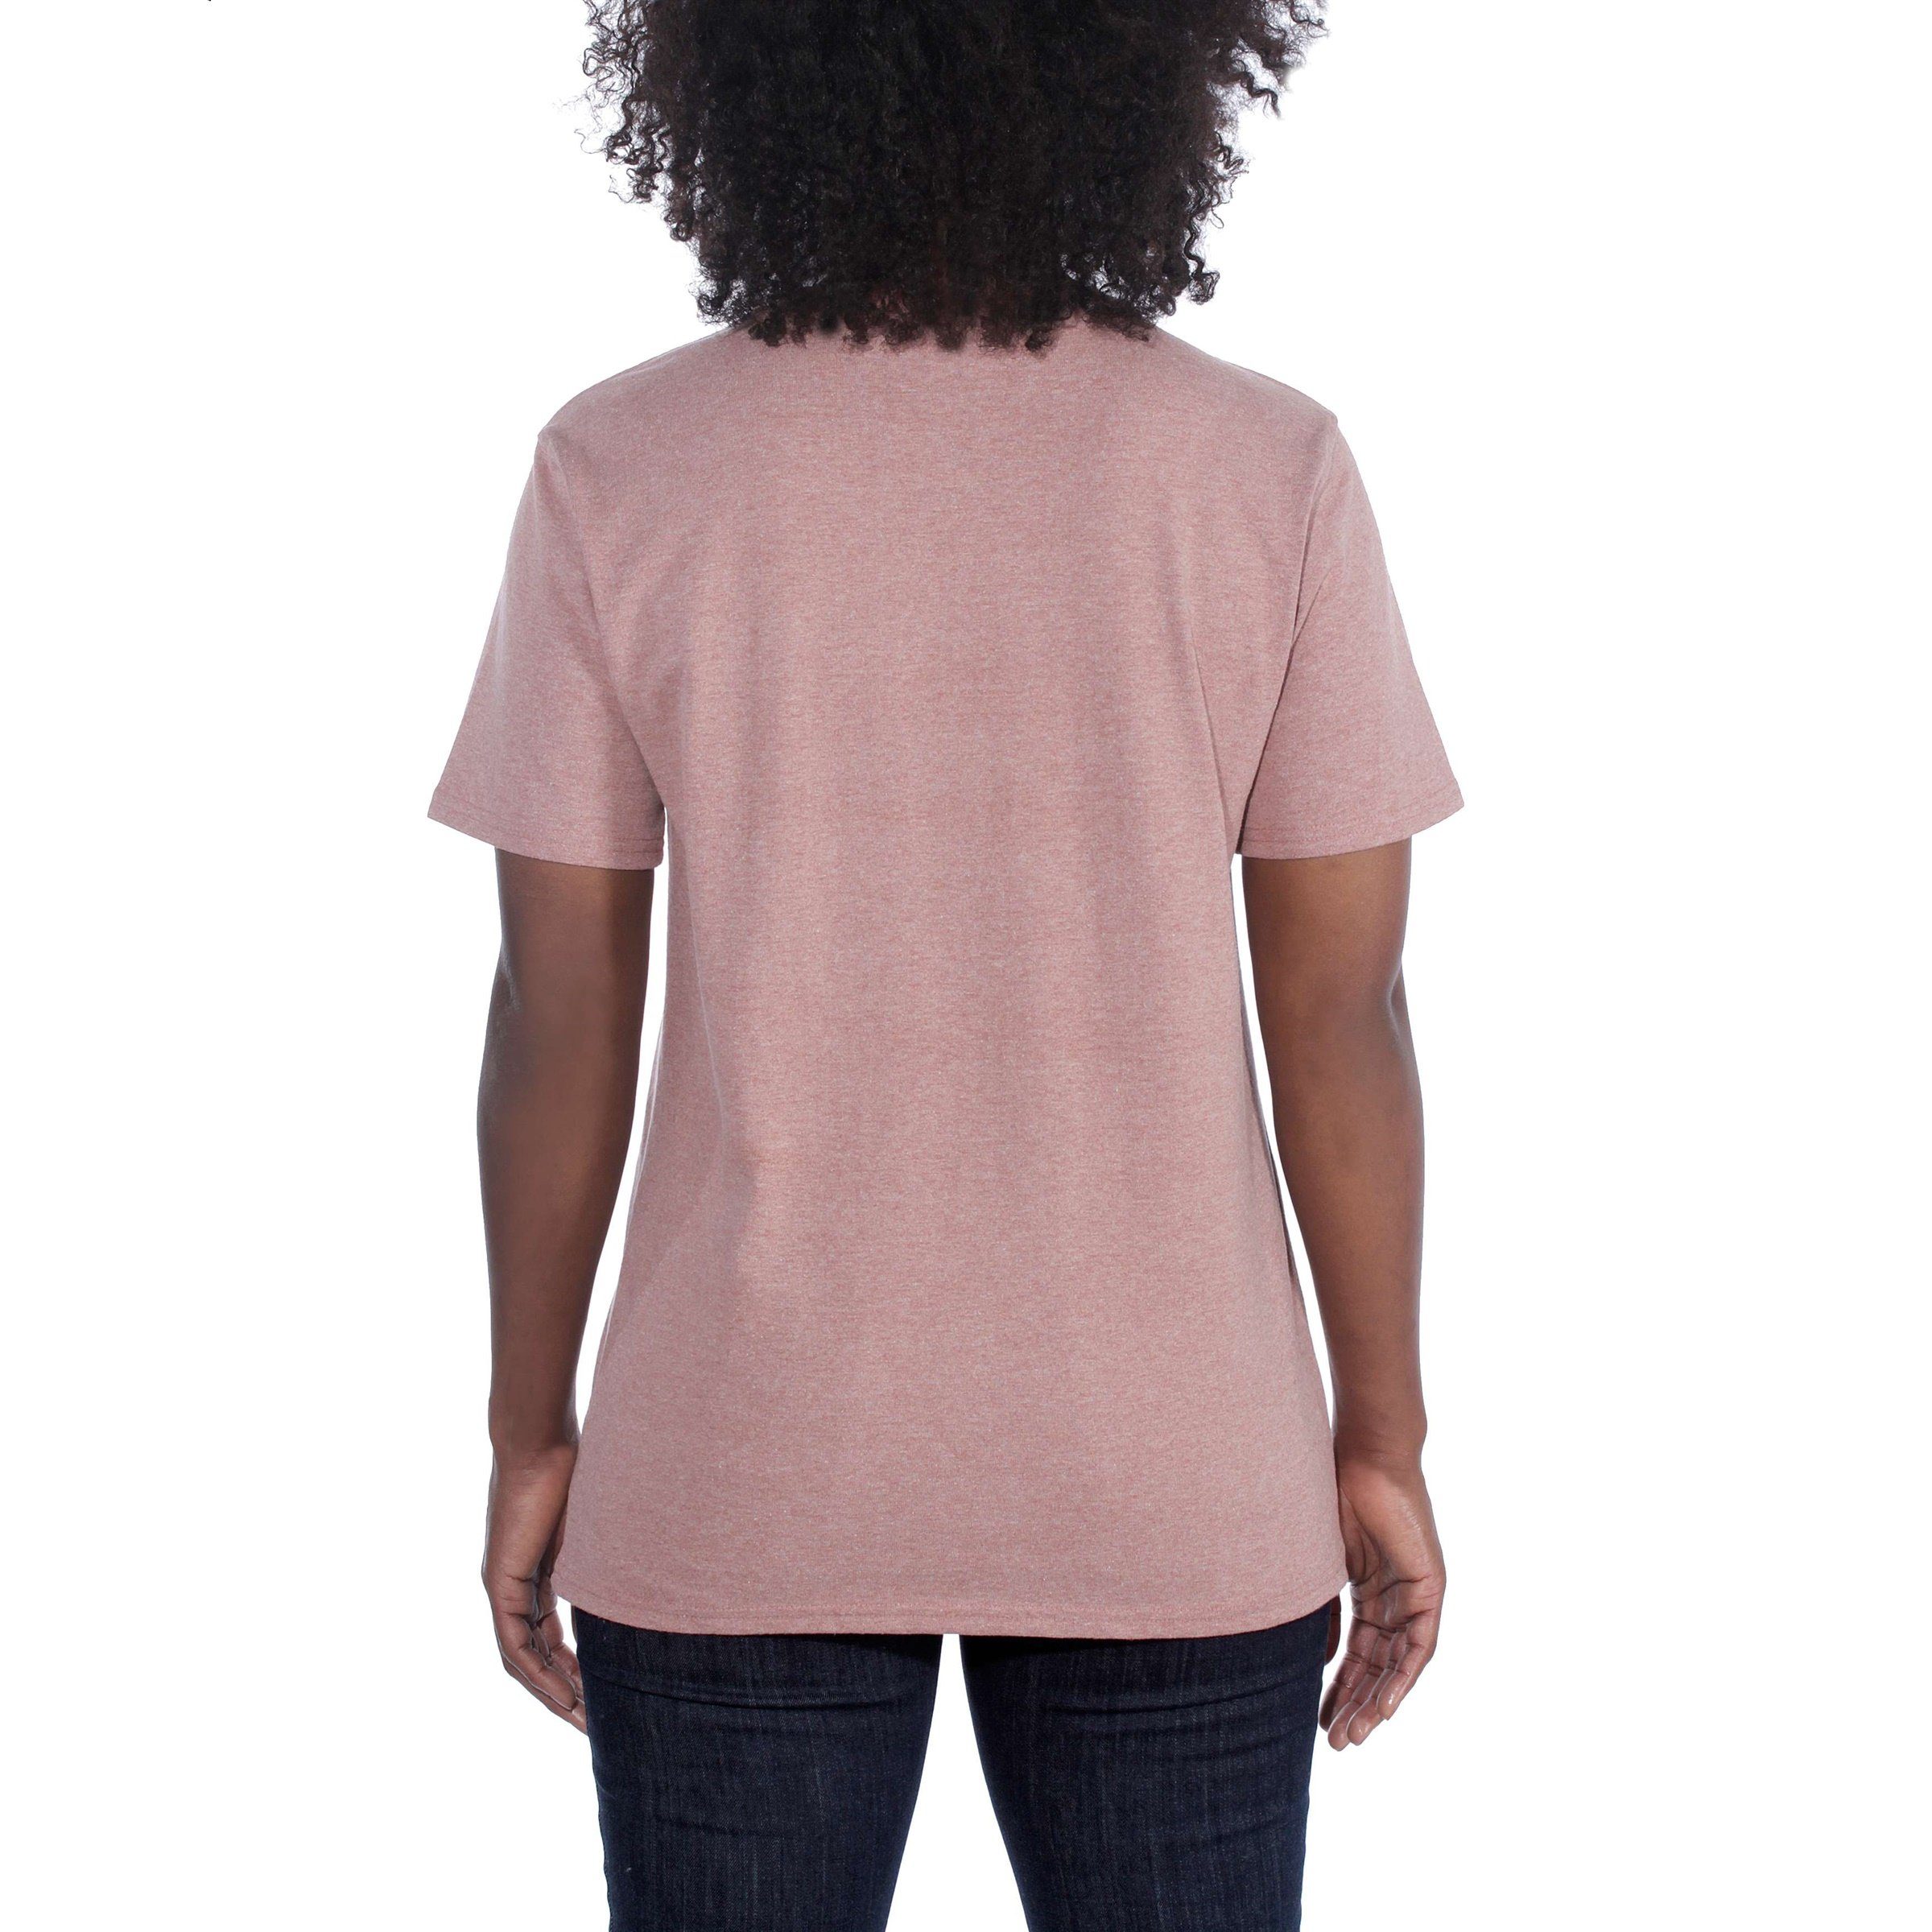 Carhartt T-Shirt Damen Fit Carhartt heather hibiscus Short-Sleeve Loose Adult T-Shirt Pocket Heavyweight